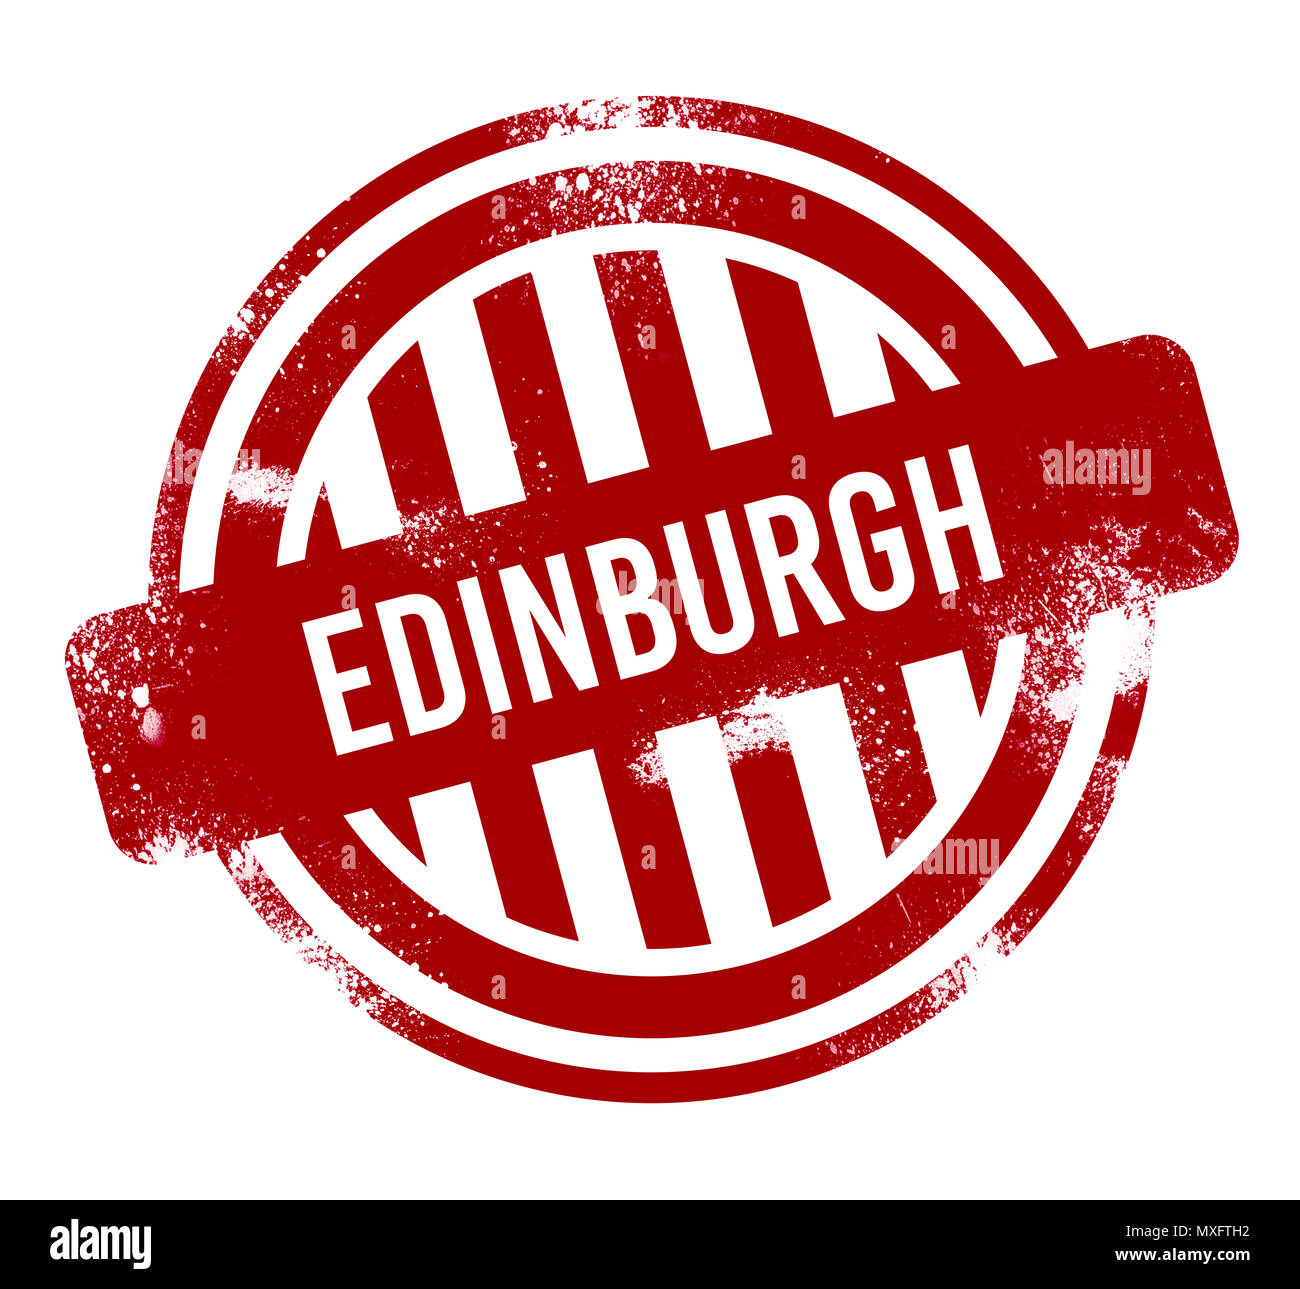 Edinburgh - Rot grunge-Taste, Stempel Stockfoto